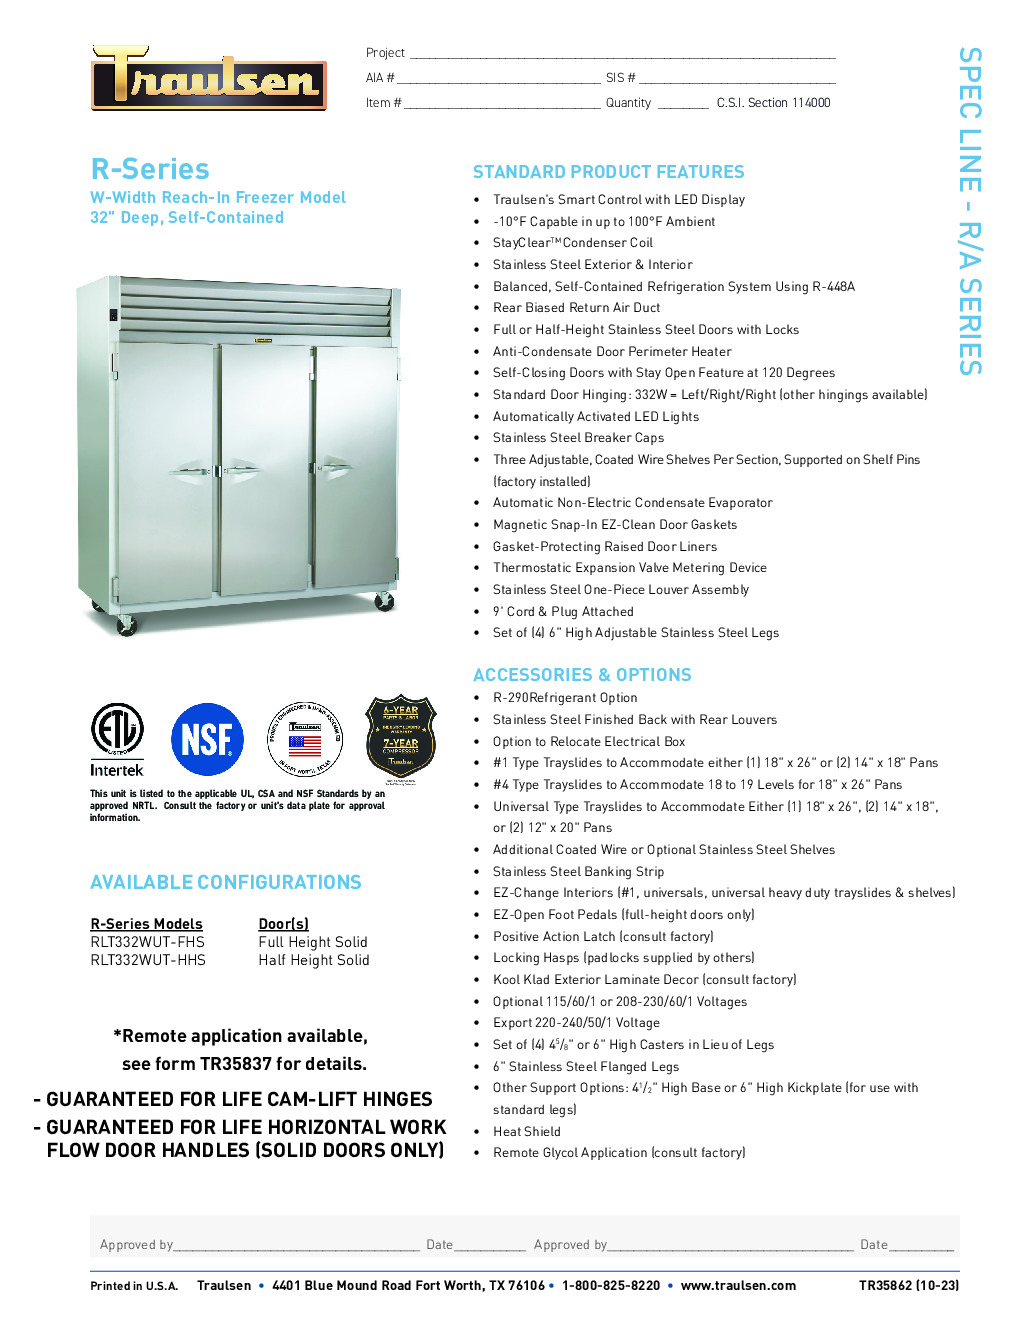 Traulsen RLT332W-HHS Reach-In Freezer